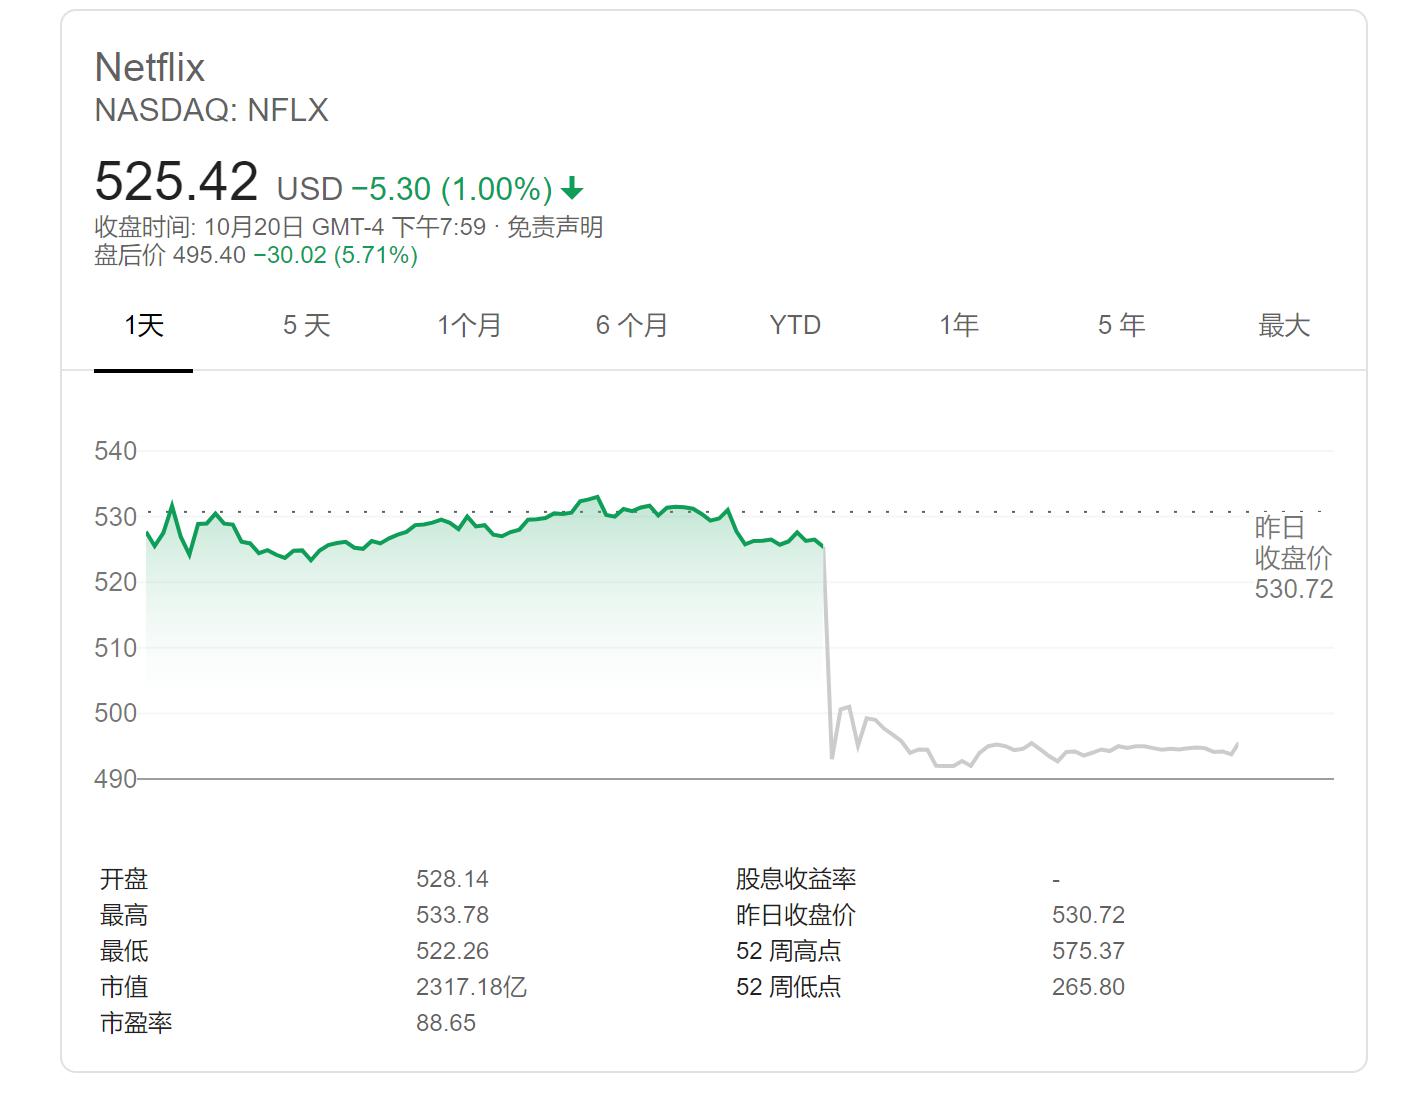 奈飞三季度新增订户大幅放缓 股价盘后跌超5%